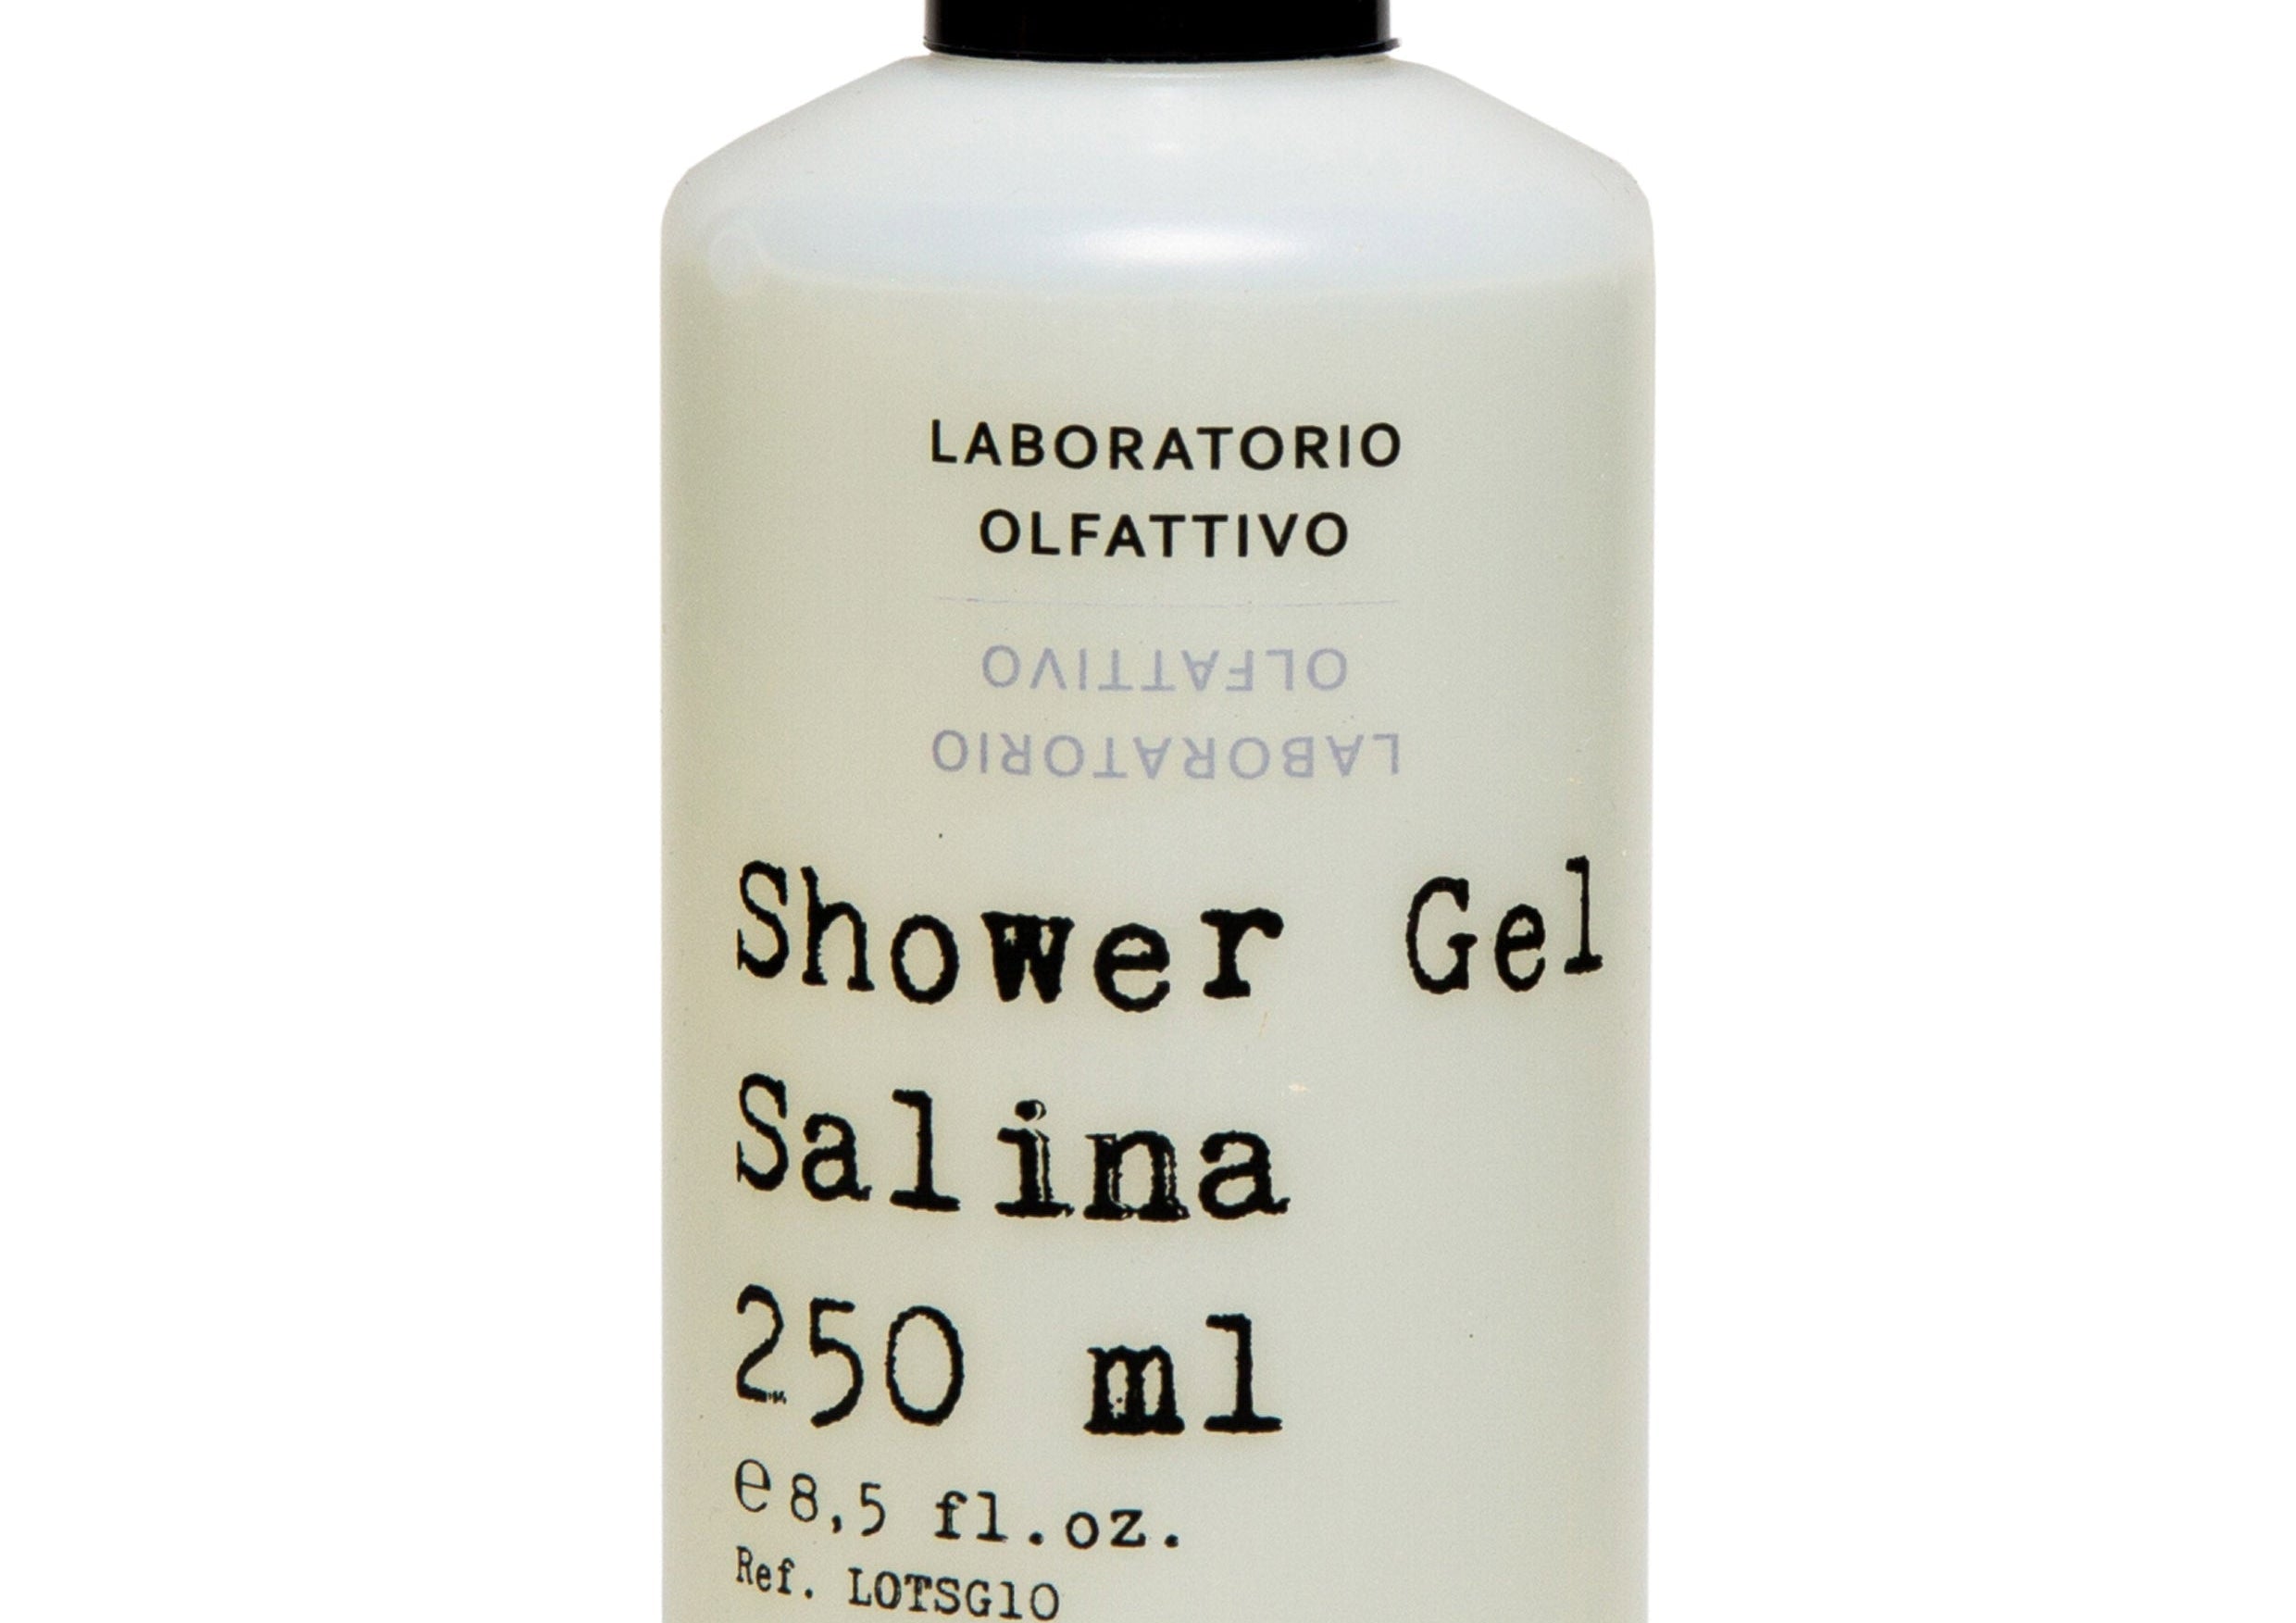 Shower Gel Salina - Shower Gel - Laboratorio Olfattivo - NISHES